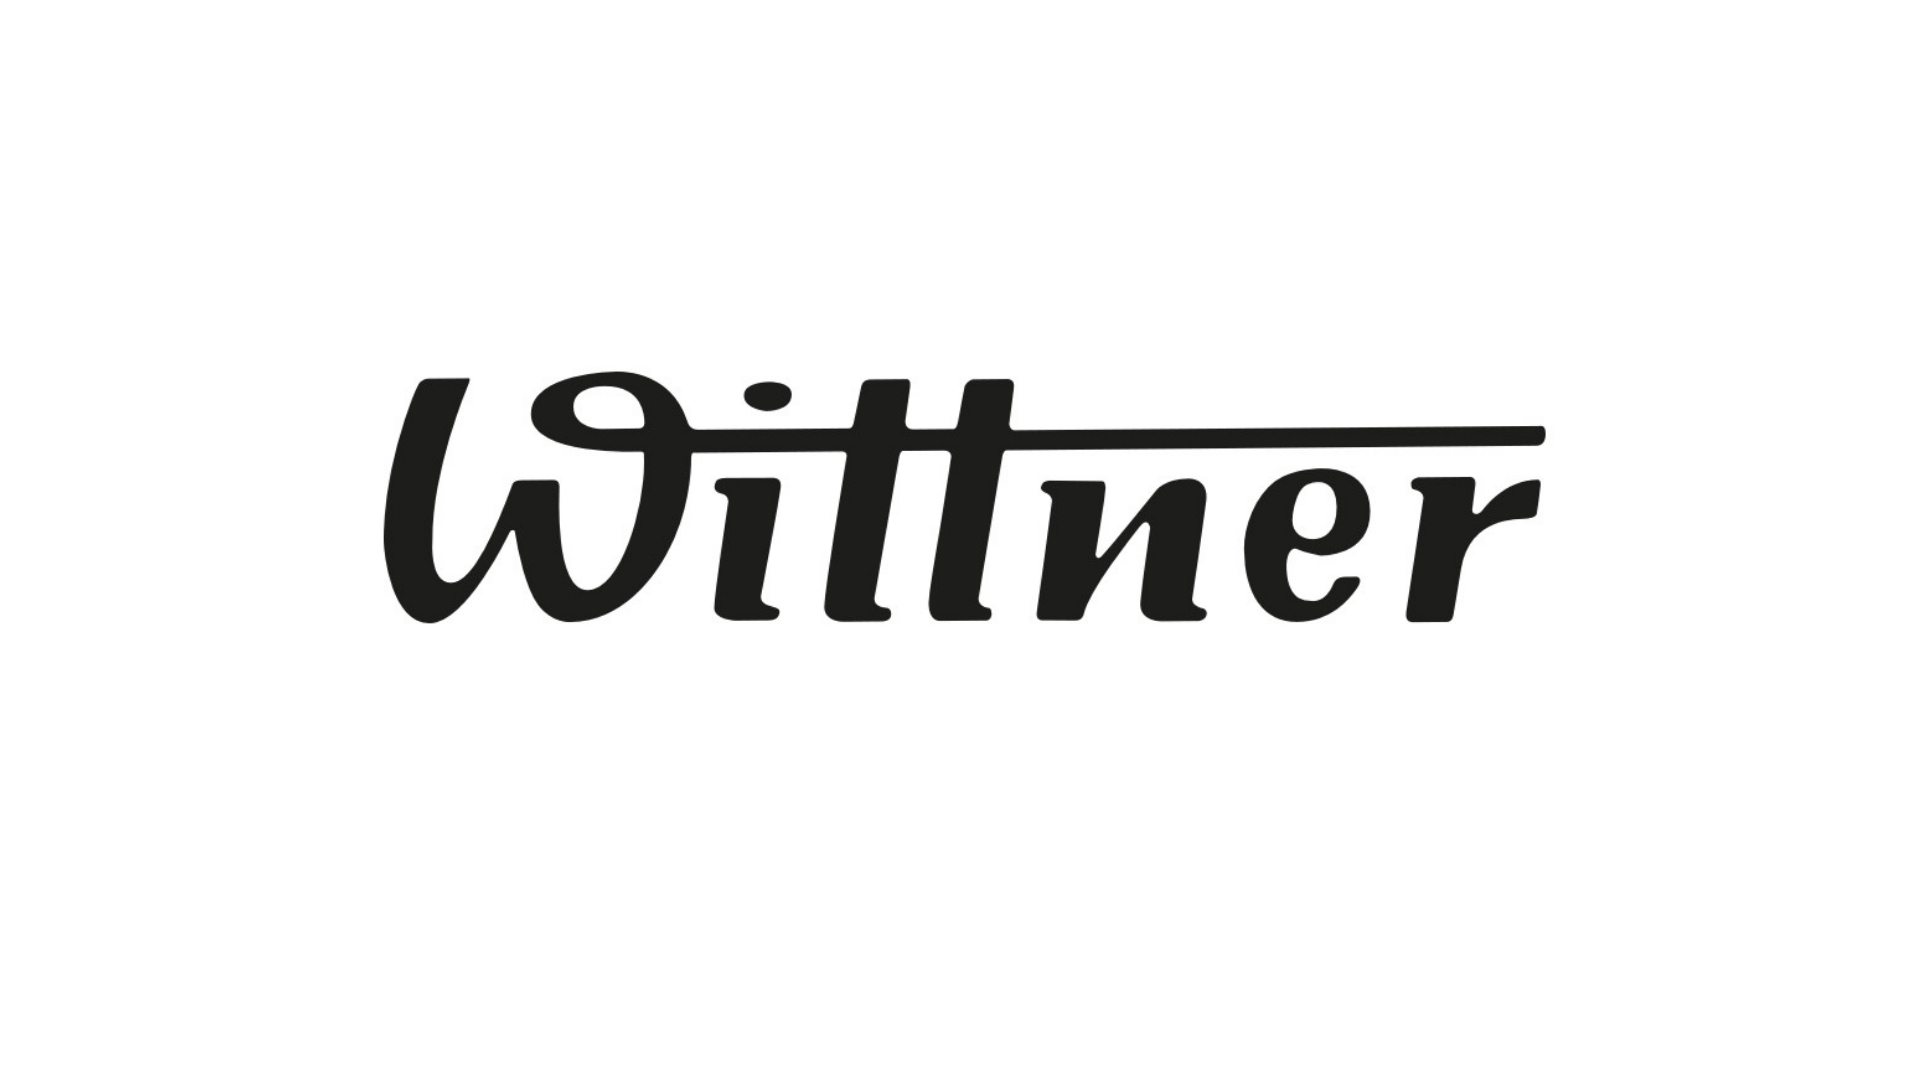 wittner logo done.jpg